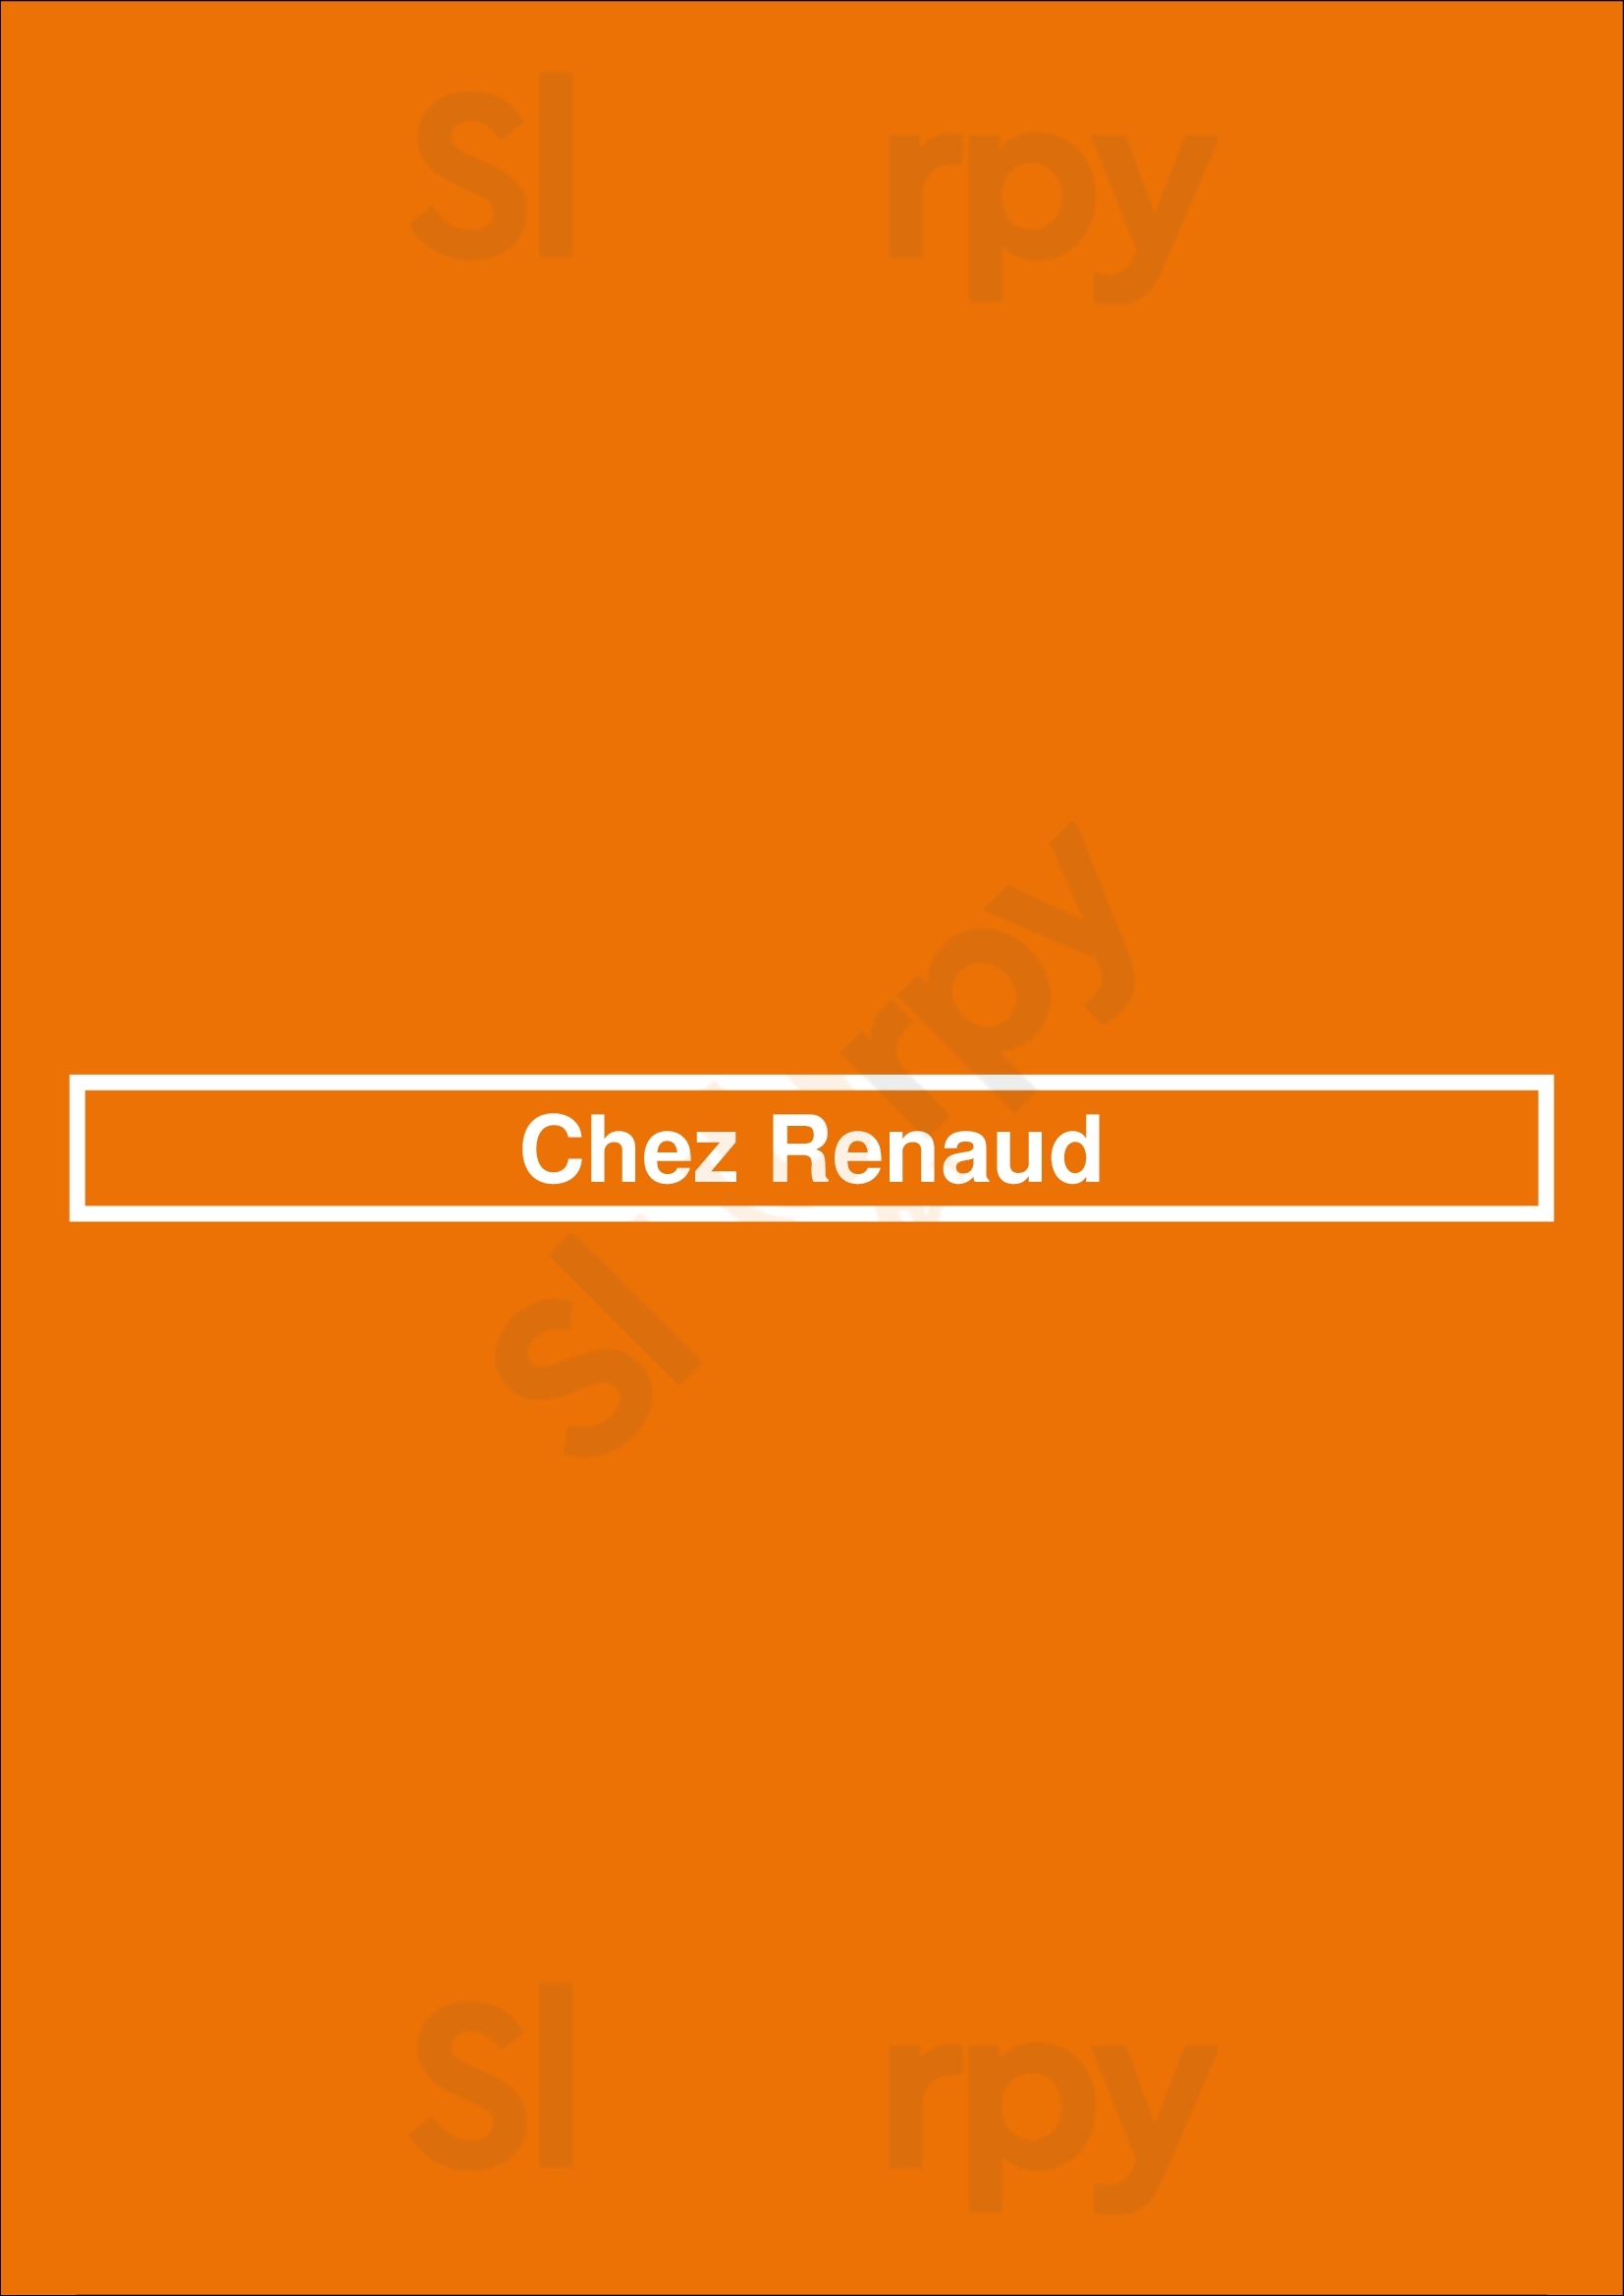 Chez Renaud Versailles Menu - 1